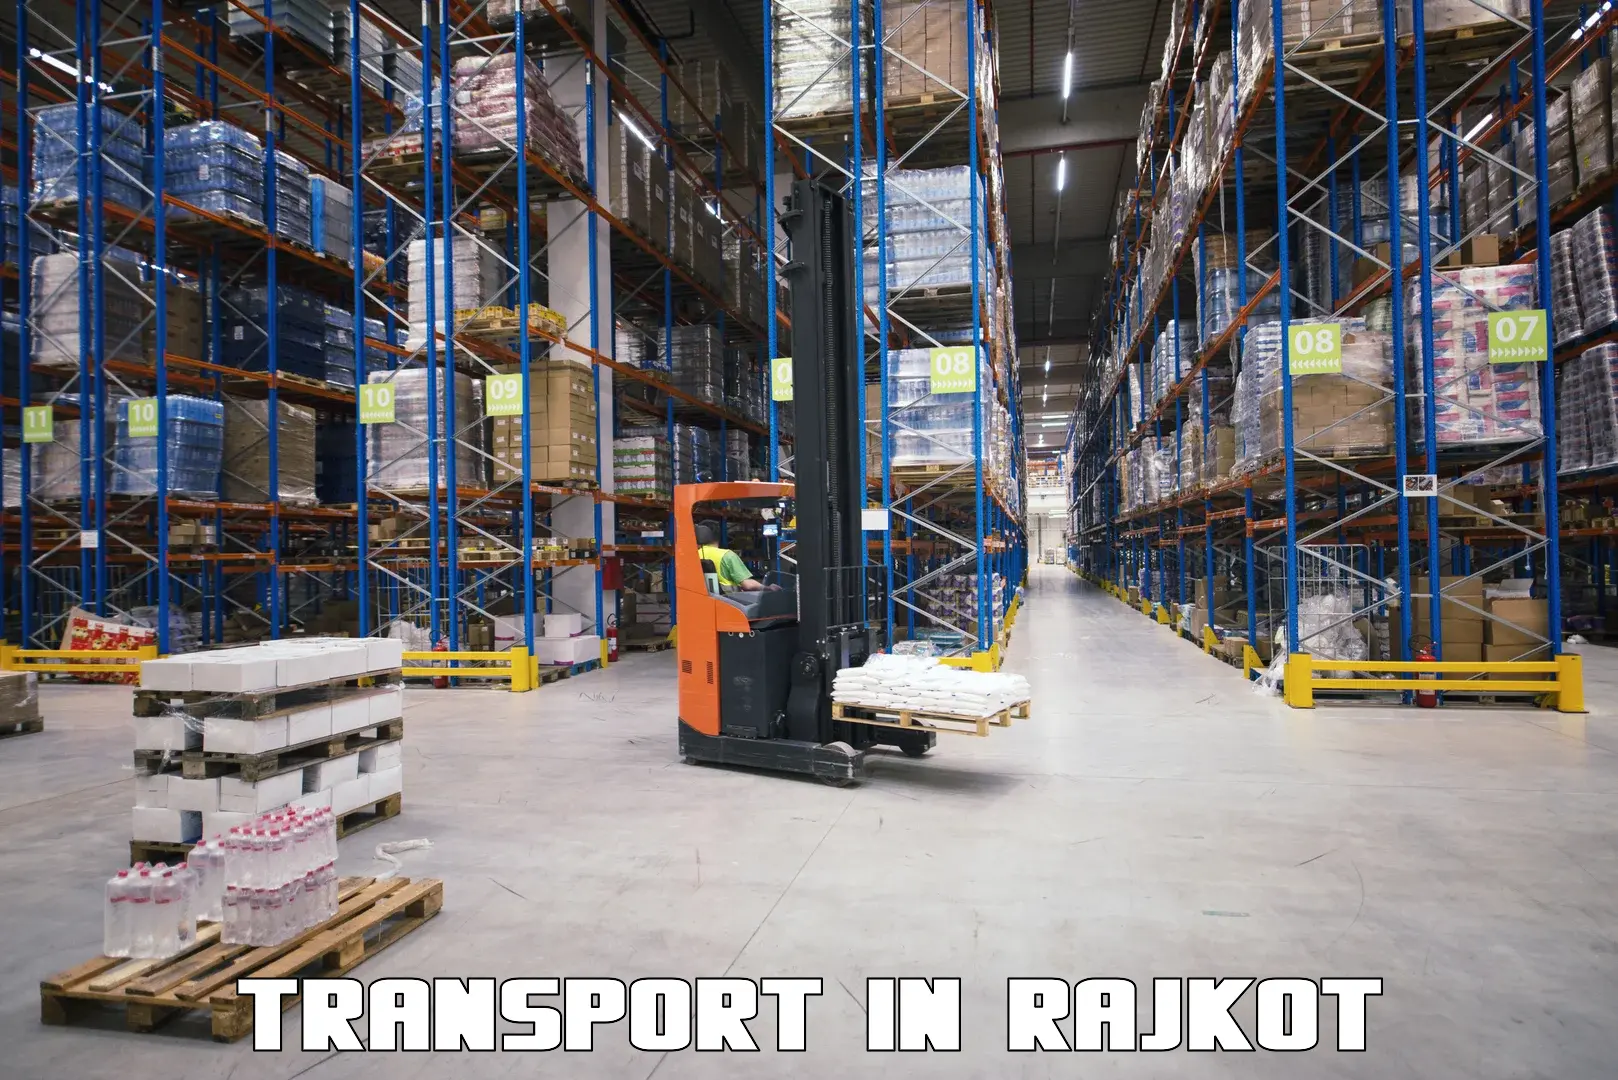 Logistics transportation services in Rajkot